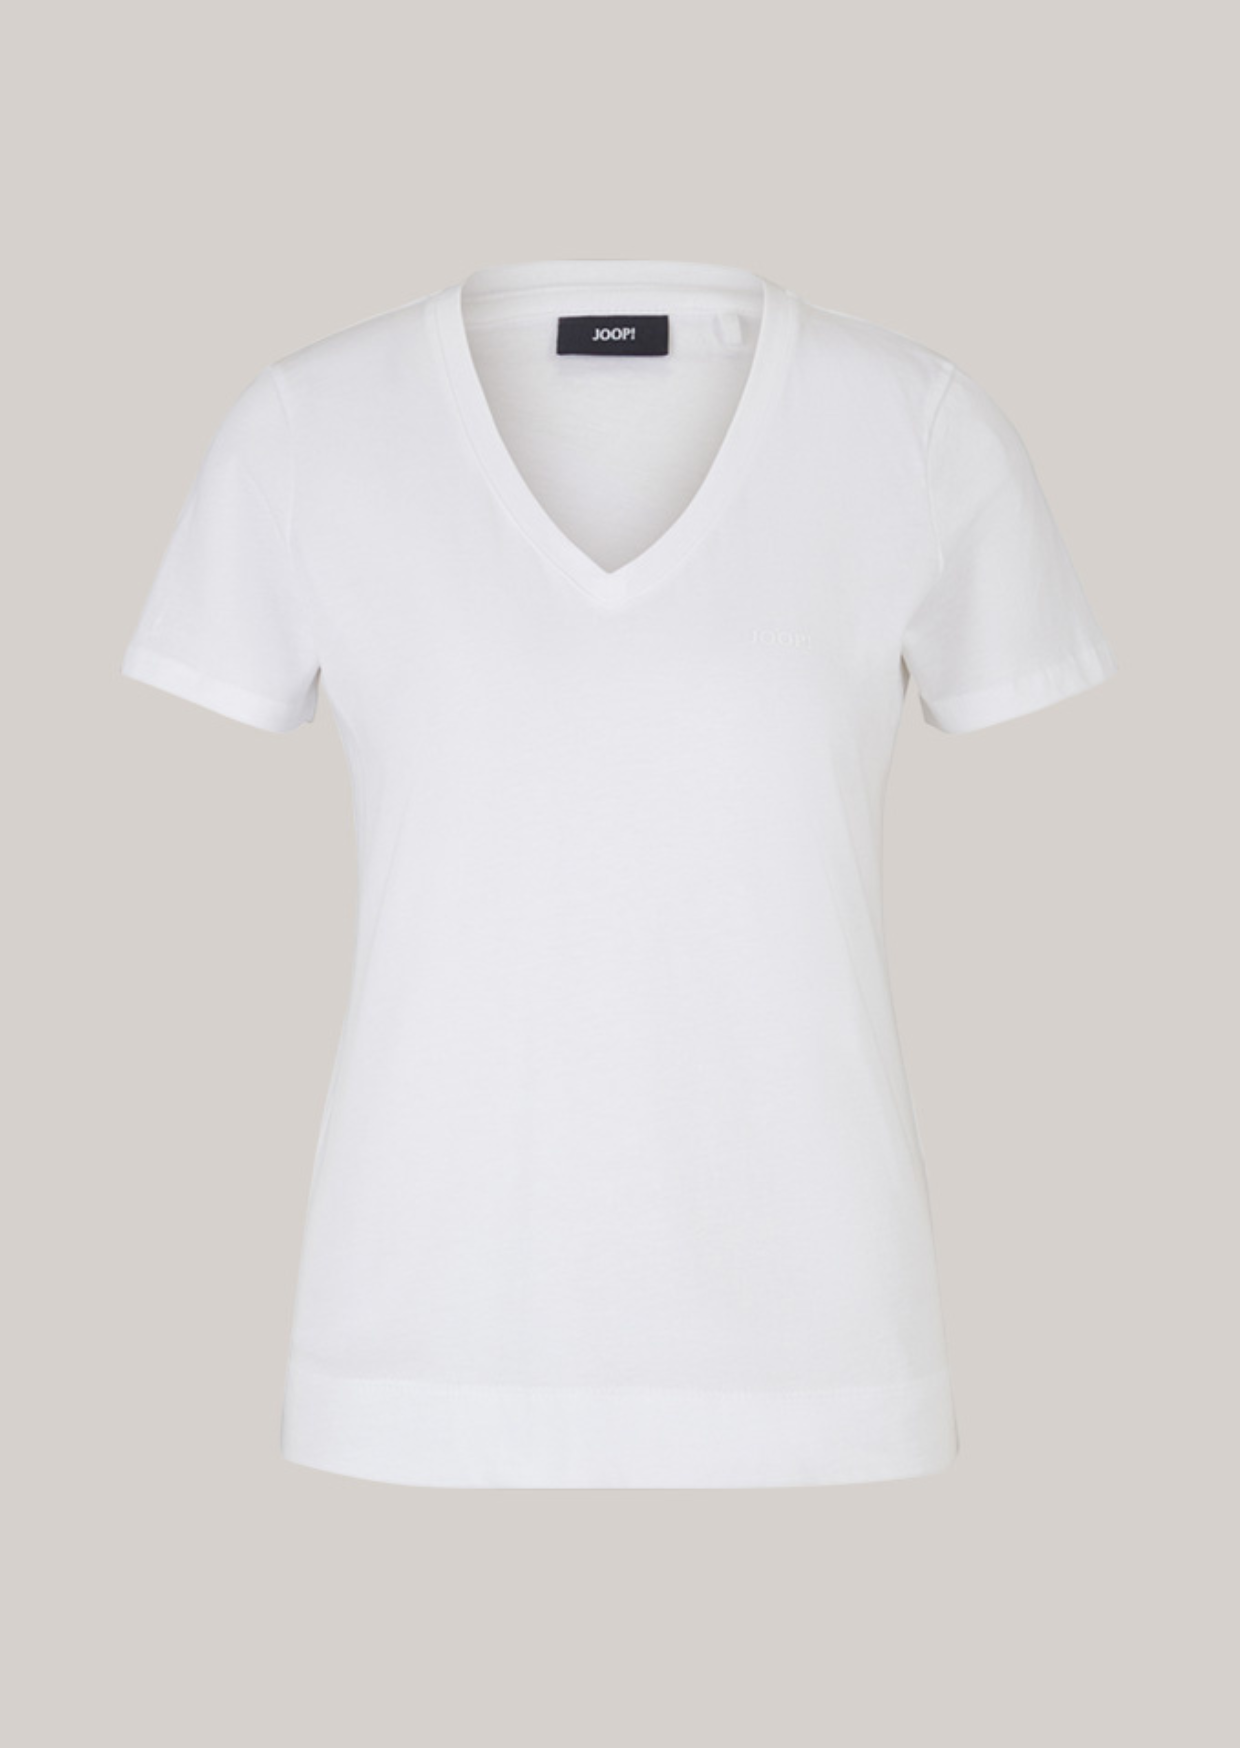 joop T-shirt White 